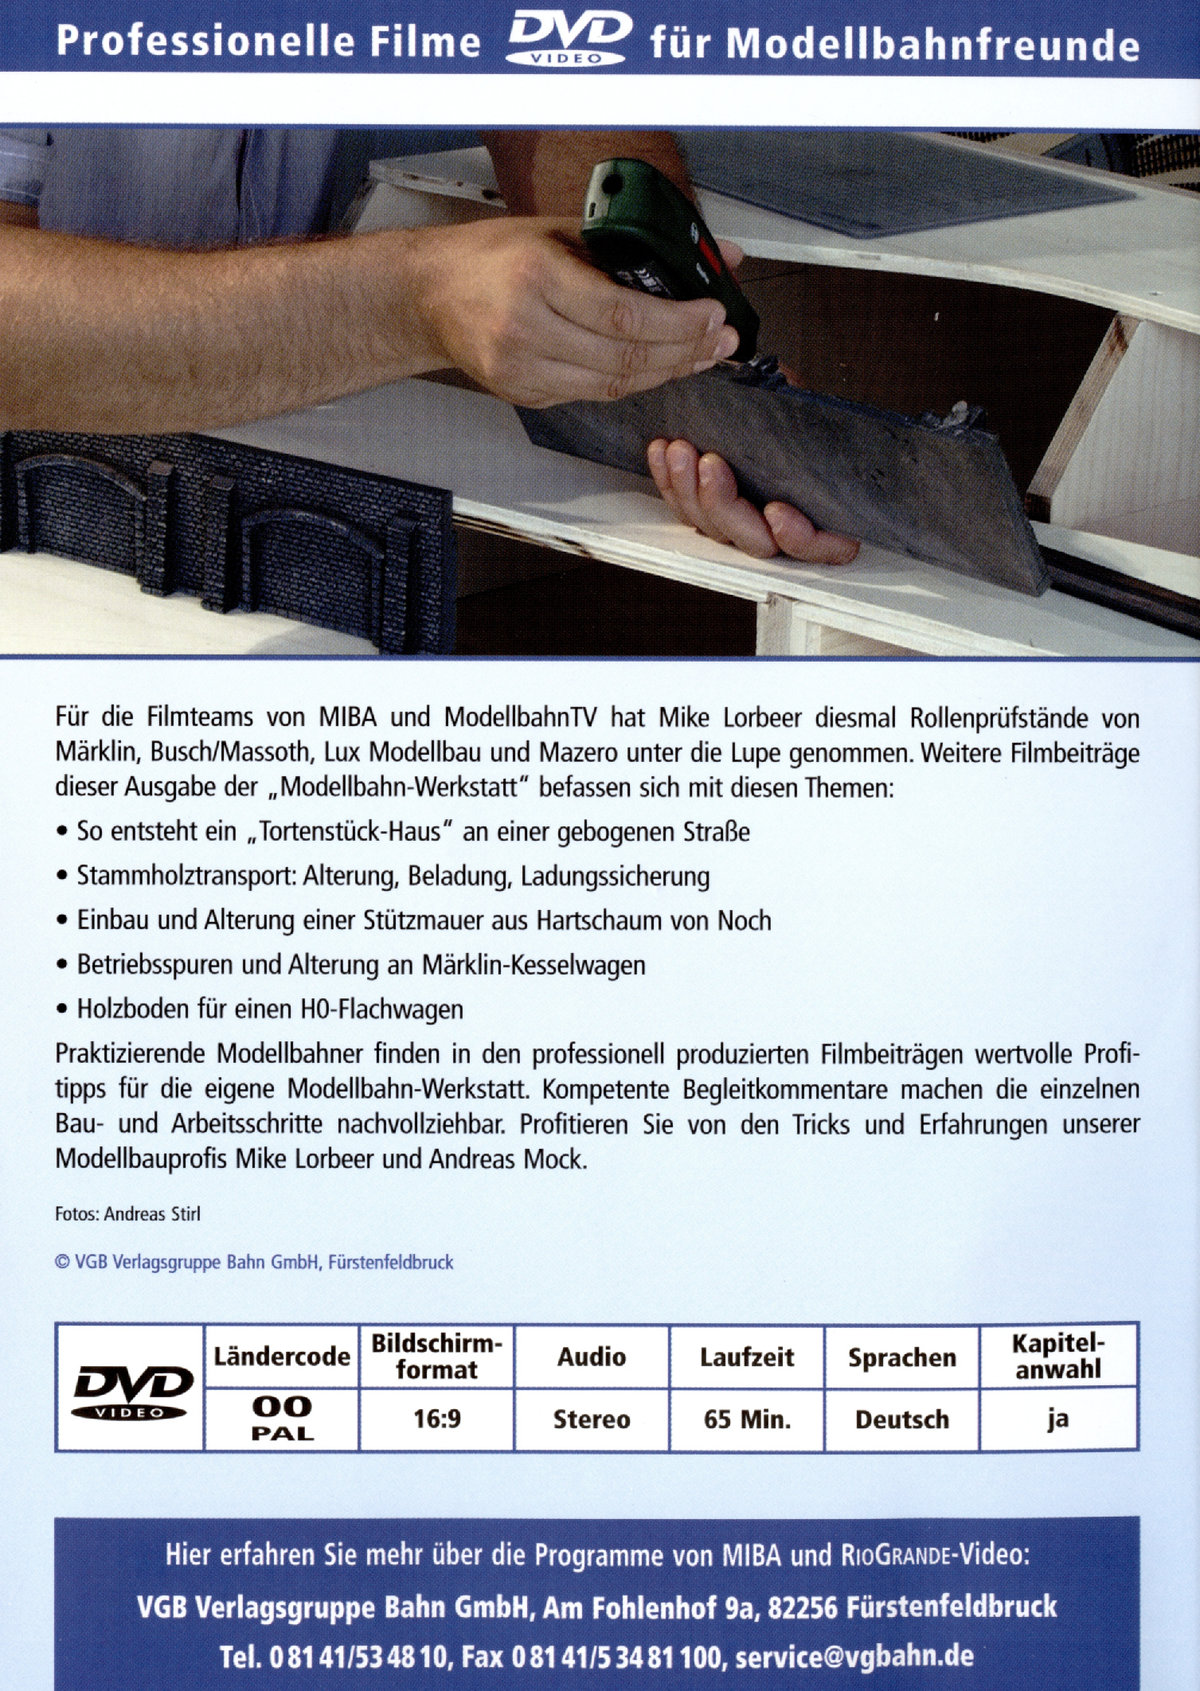 DVD - Beladung und Ladungssicherung